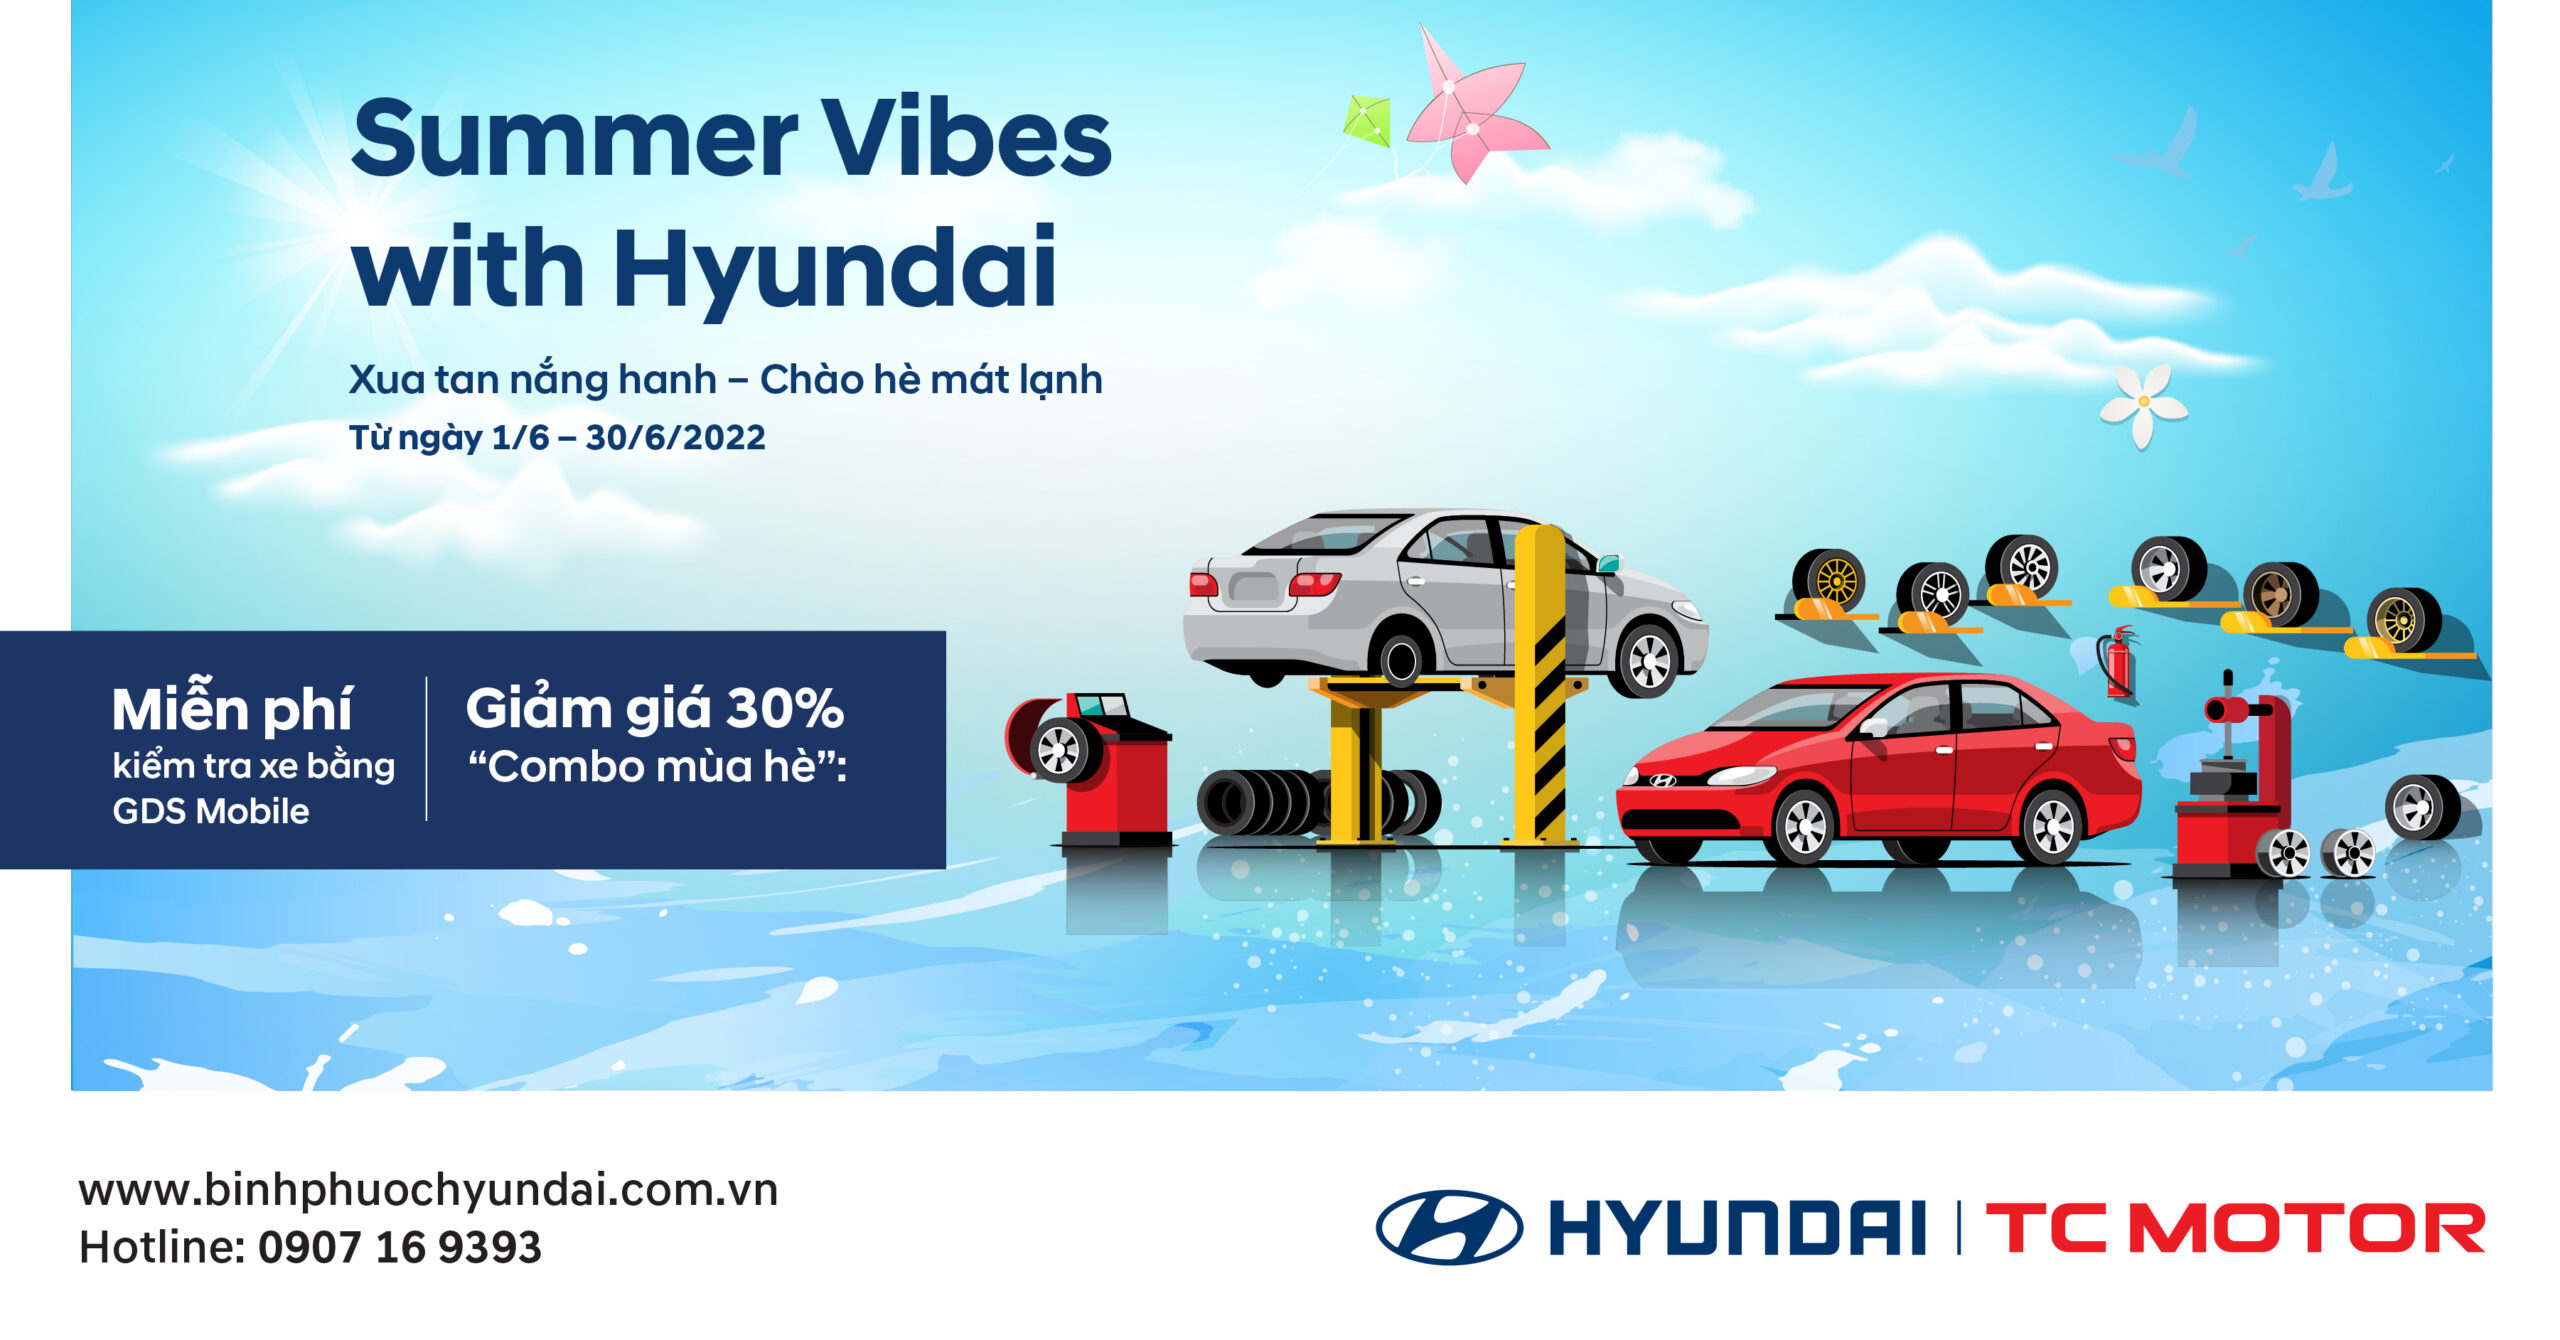 Summer vibes with Hyundai (Xua tan nắng hanh – Chào hè mát lạnh)